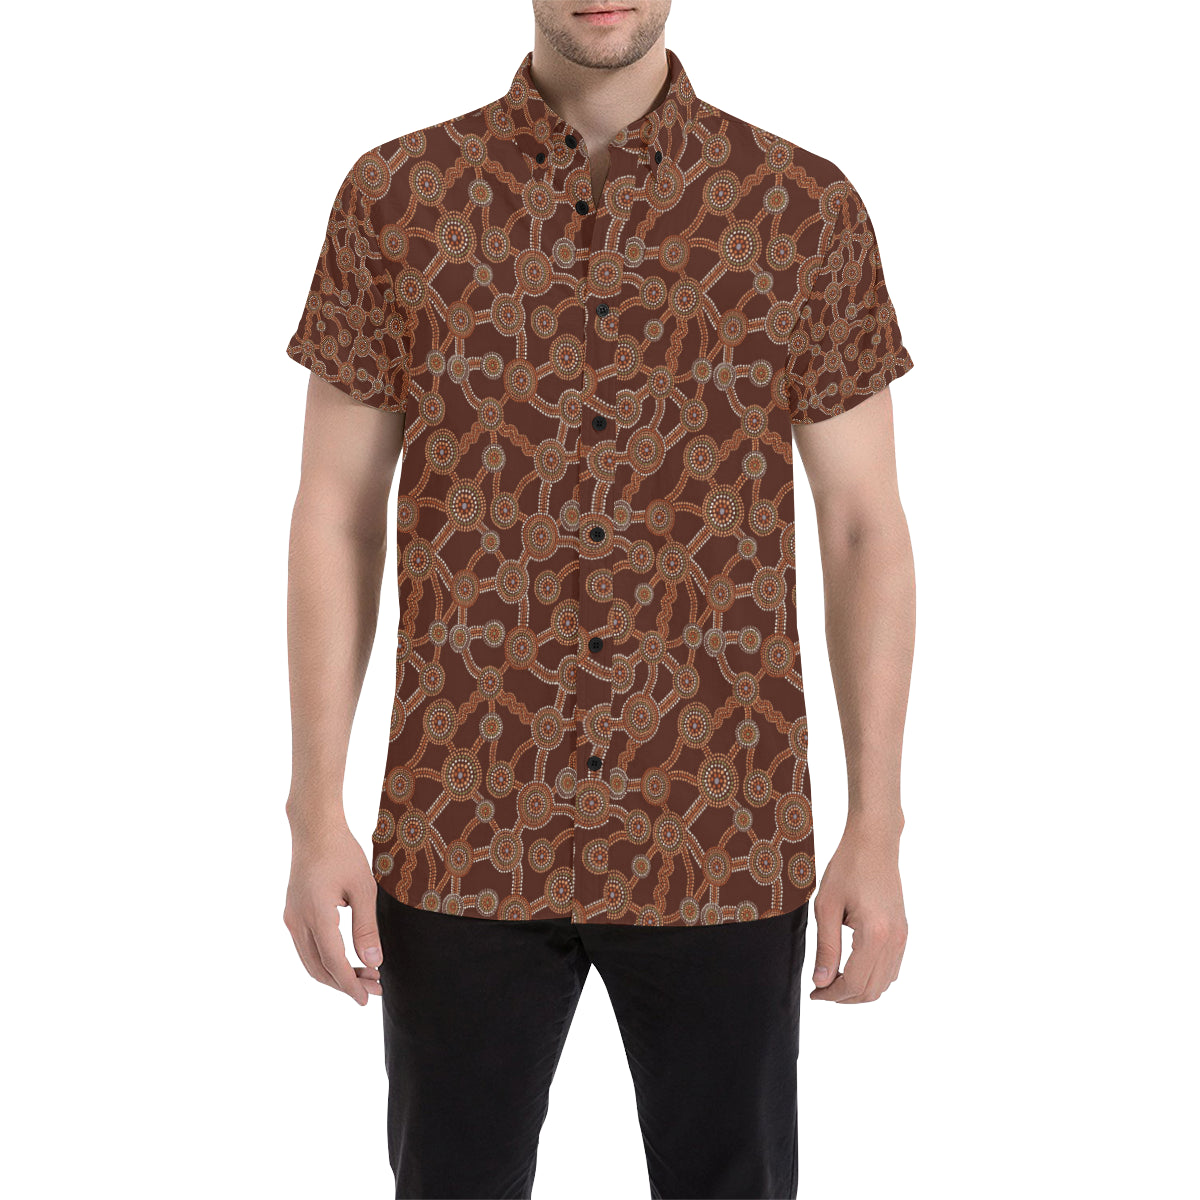 Aboriginal Pattern Print Design 03 Men's Short Sleeve Button Up Shirt